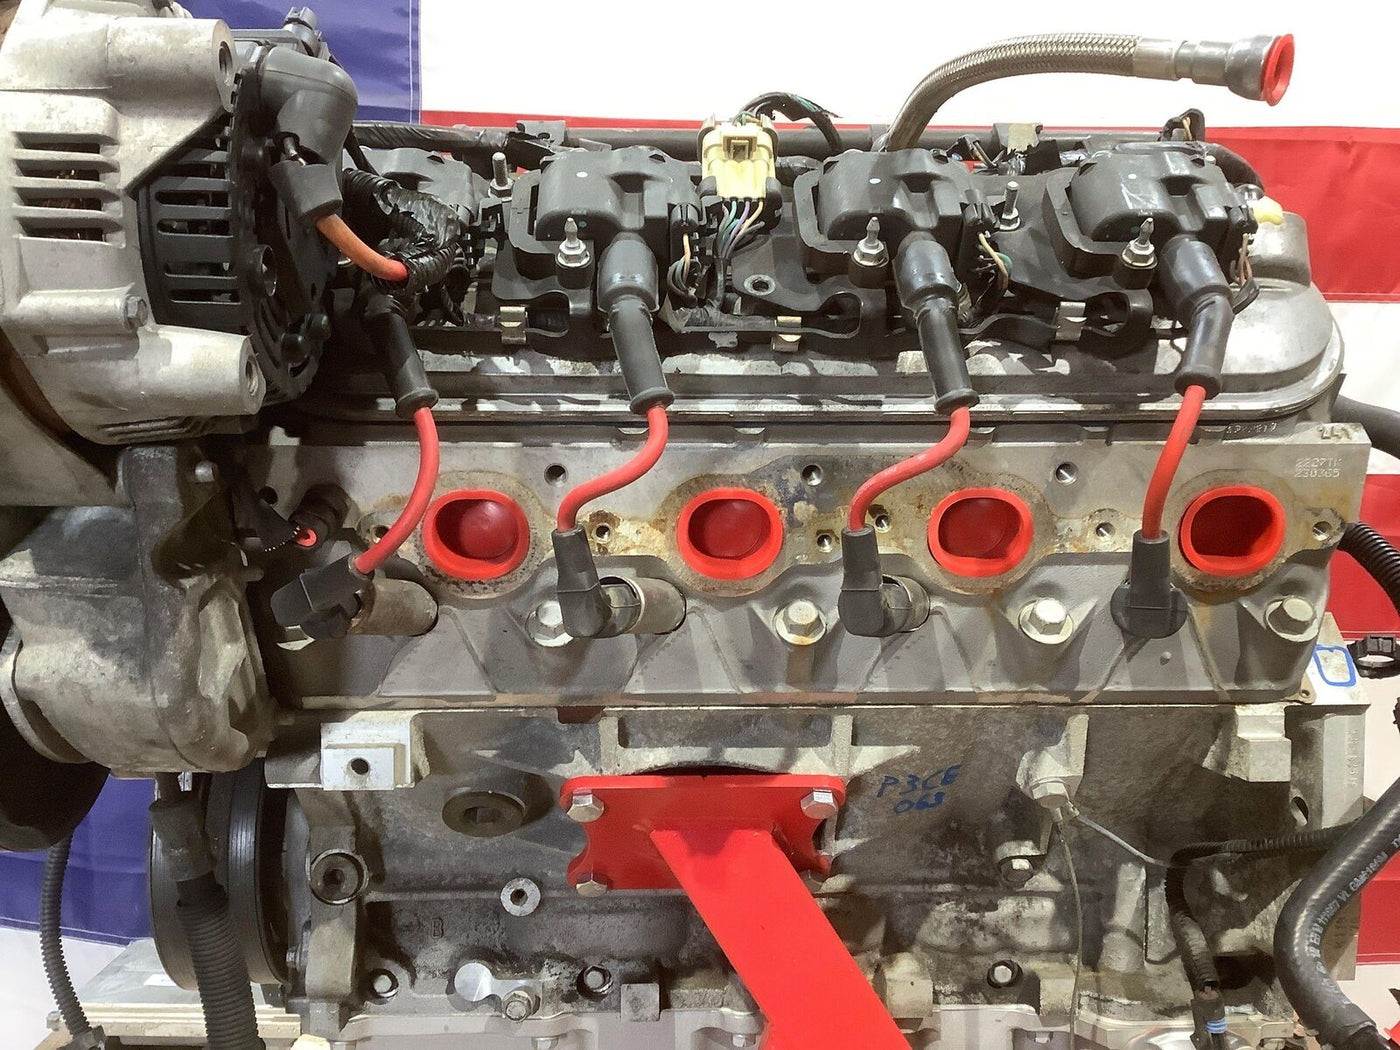 Chevy Corvette C5 LS1 5.7L V8 Engine Swap Donor Dropout (LS1) Hot Rod Swap 98K